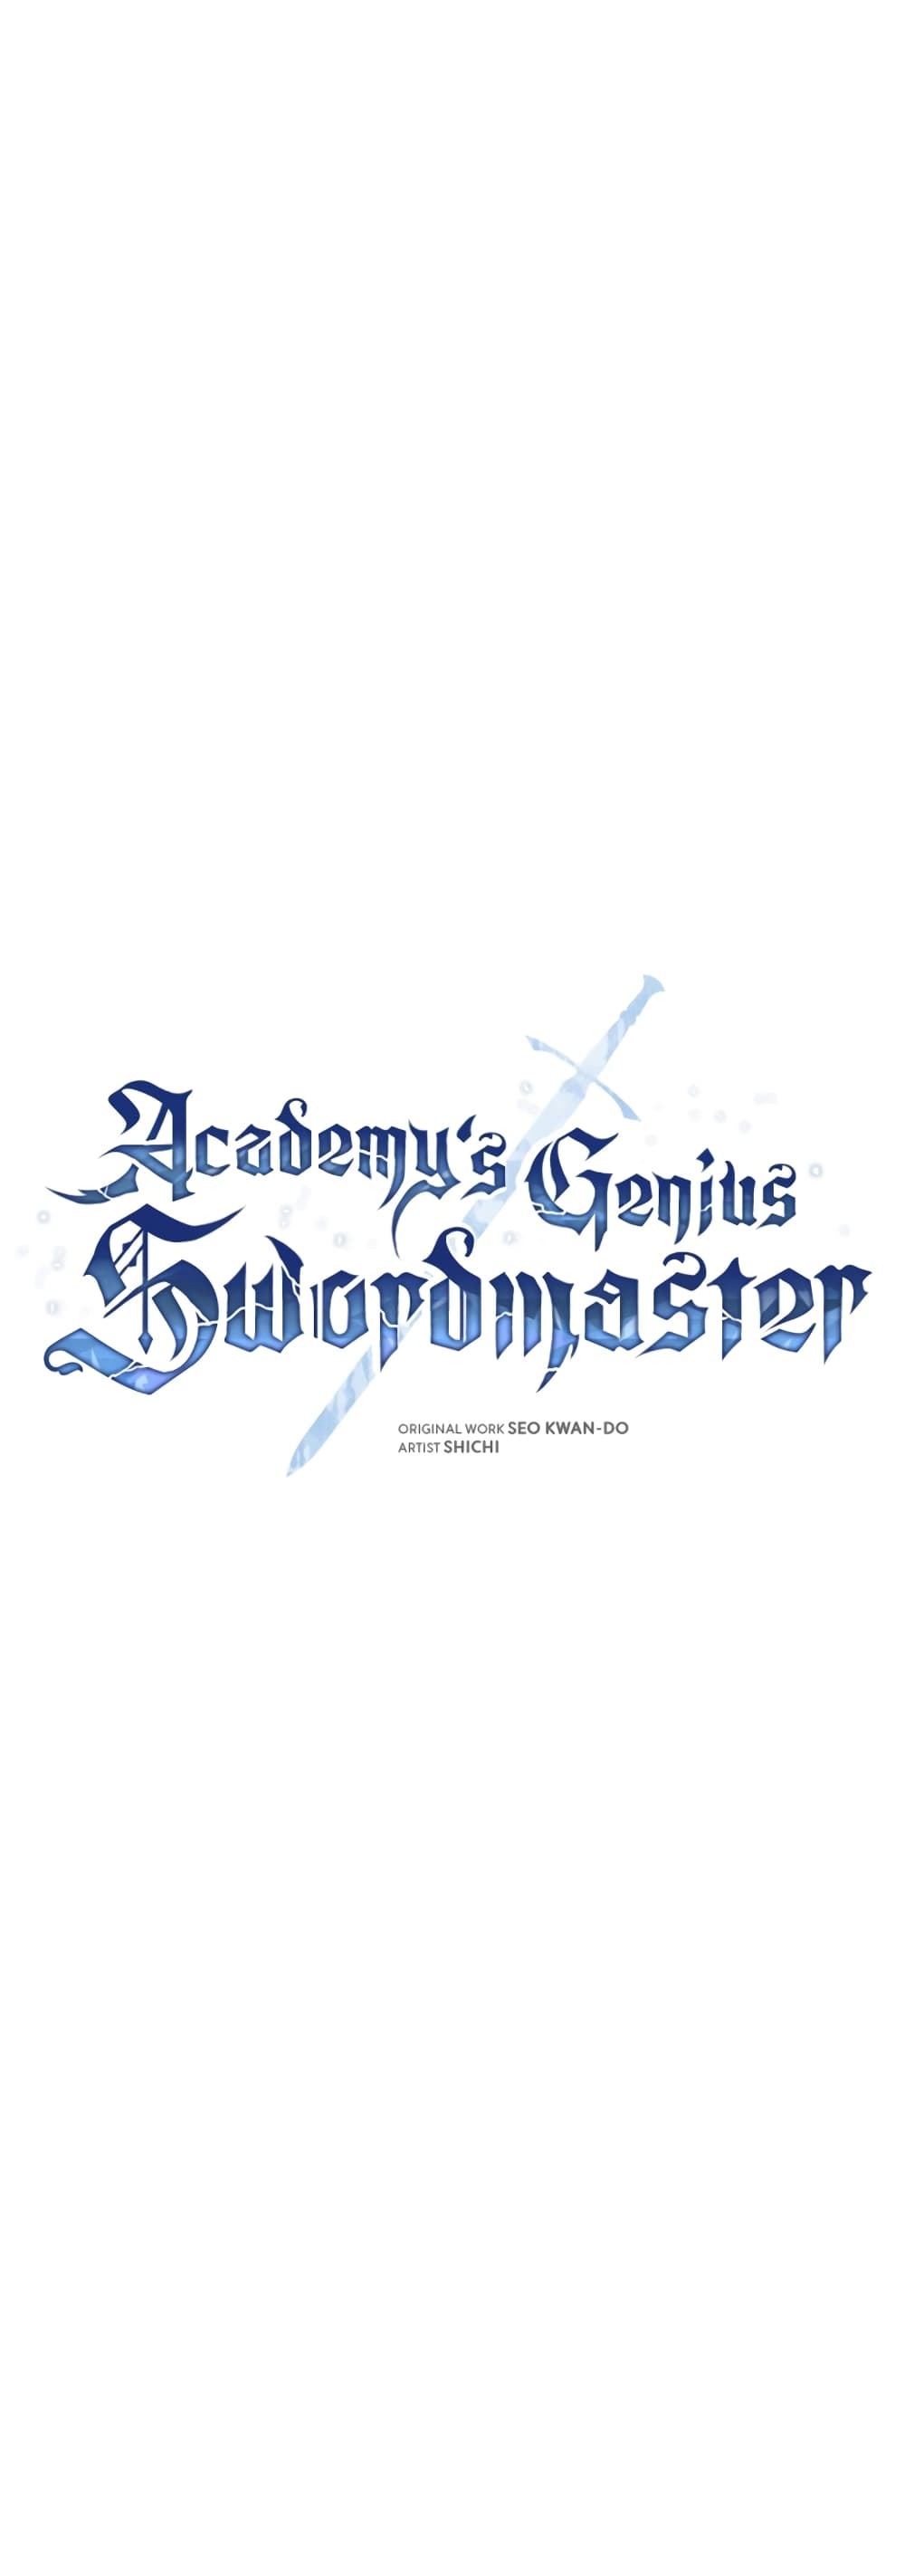 Academy’s Genius Swordmaster 17-17